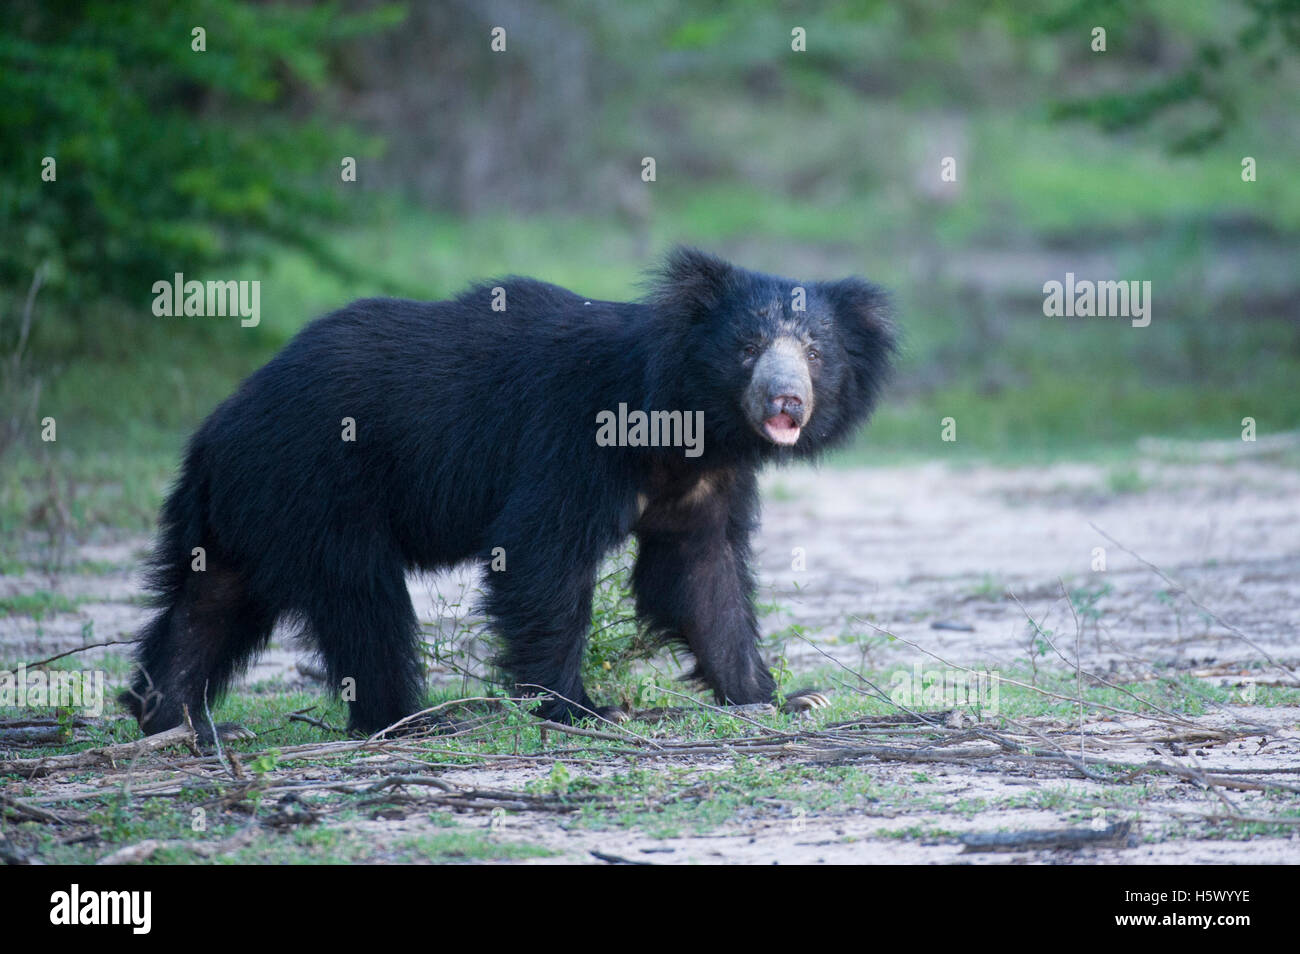 Sloth bear (Melursus ursinus), Yala National Park, Sri Lanka Stock Photo